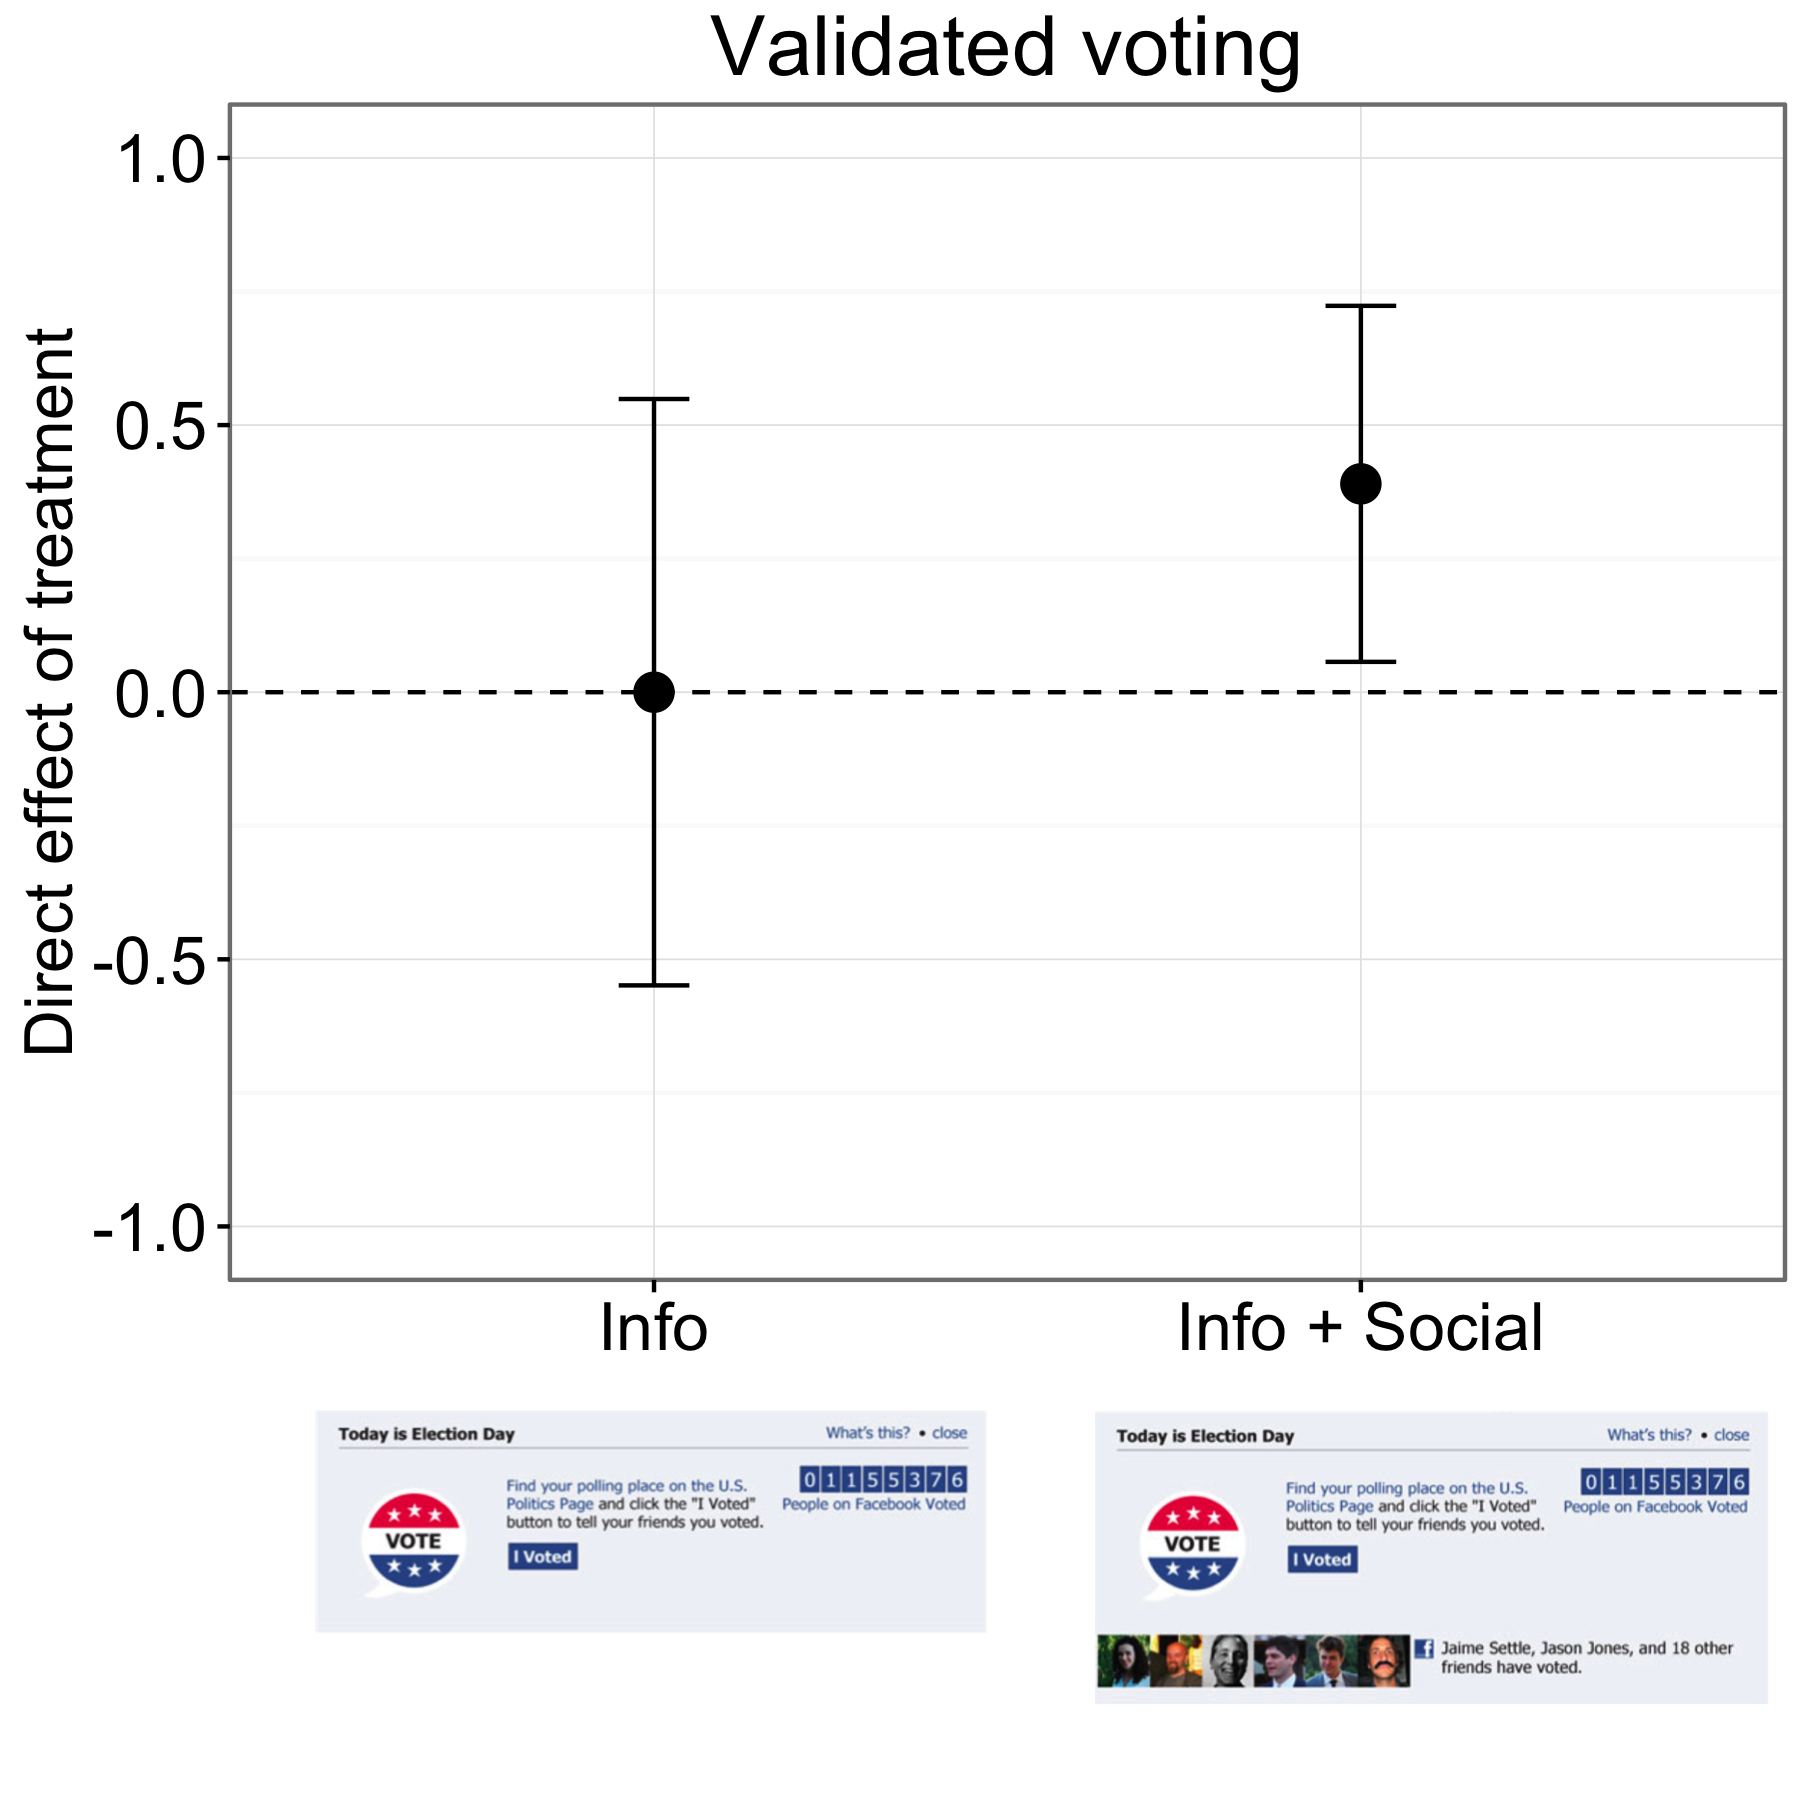 図4.18：Facebook上での投票外実験の結果（Bond et al。2012）。 Infoグループの参加者は、コントロールグループの参加者と同じ割合で投票しましたが、Info + Socialグループの参加者はわずかに高い割合で投票しました。バーは推定95％の信頼区間を表す。このグラフの結果は、投票記録に一致した約600万人の参加者のためのものです。ボンドら（Bond et al。 （2012）、図1を参照されたい。